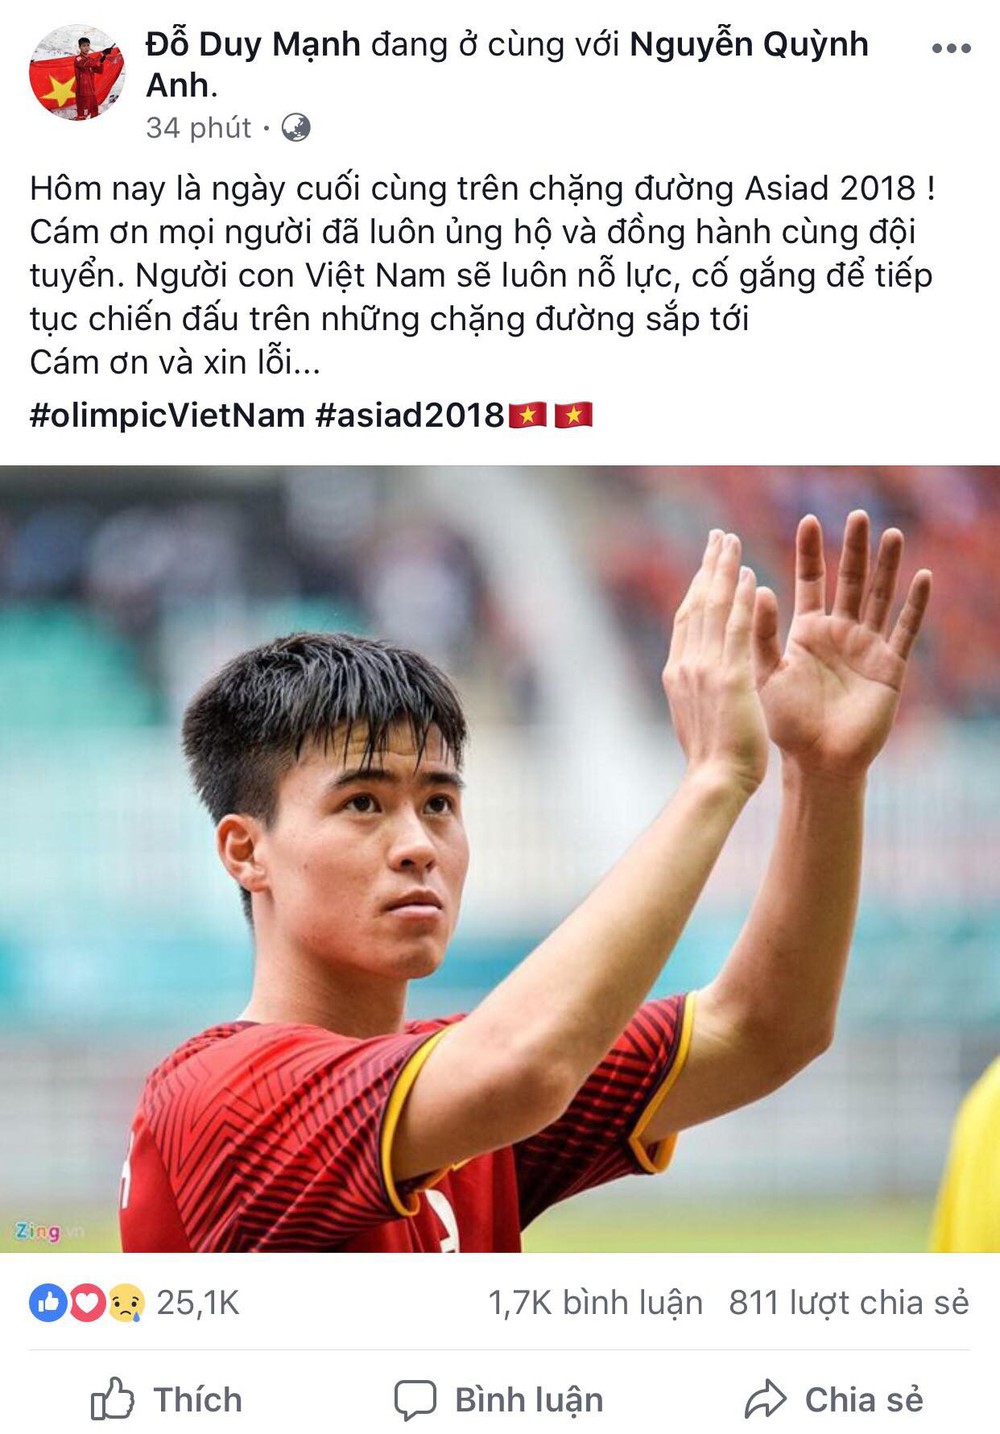 Công Phượng, Văn Toàn cùng nhiều cầu thủ nói lời tạm biệt U23 Việt Nam sau thất bại trước UAE - Ảnh 6.